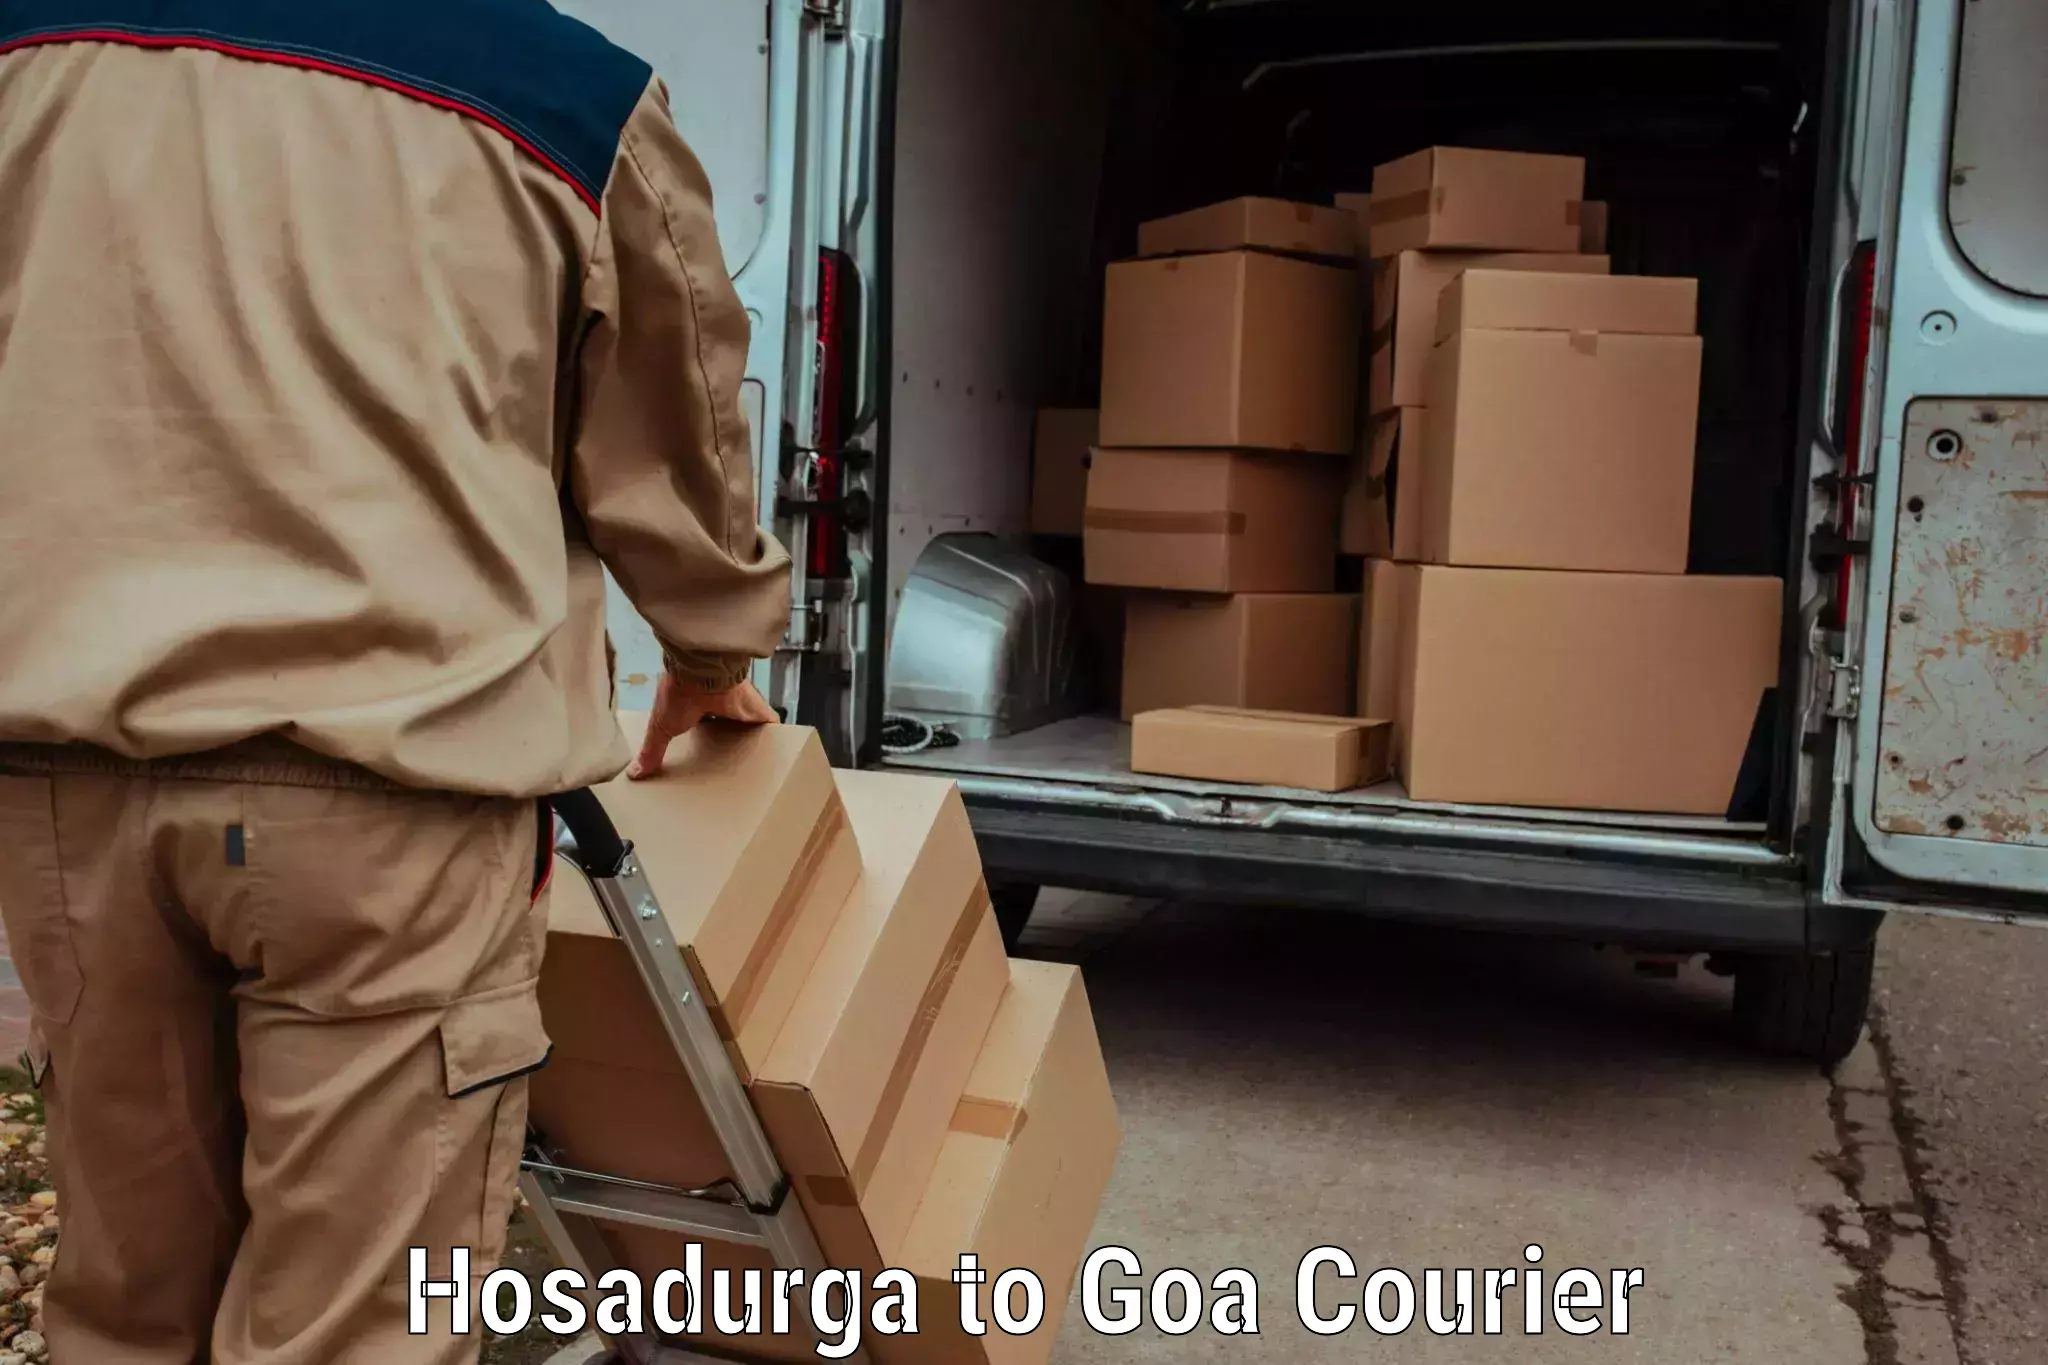 Reliable delivery network Hosadurga to Panaji